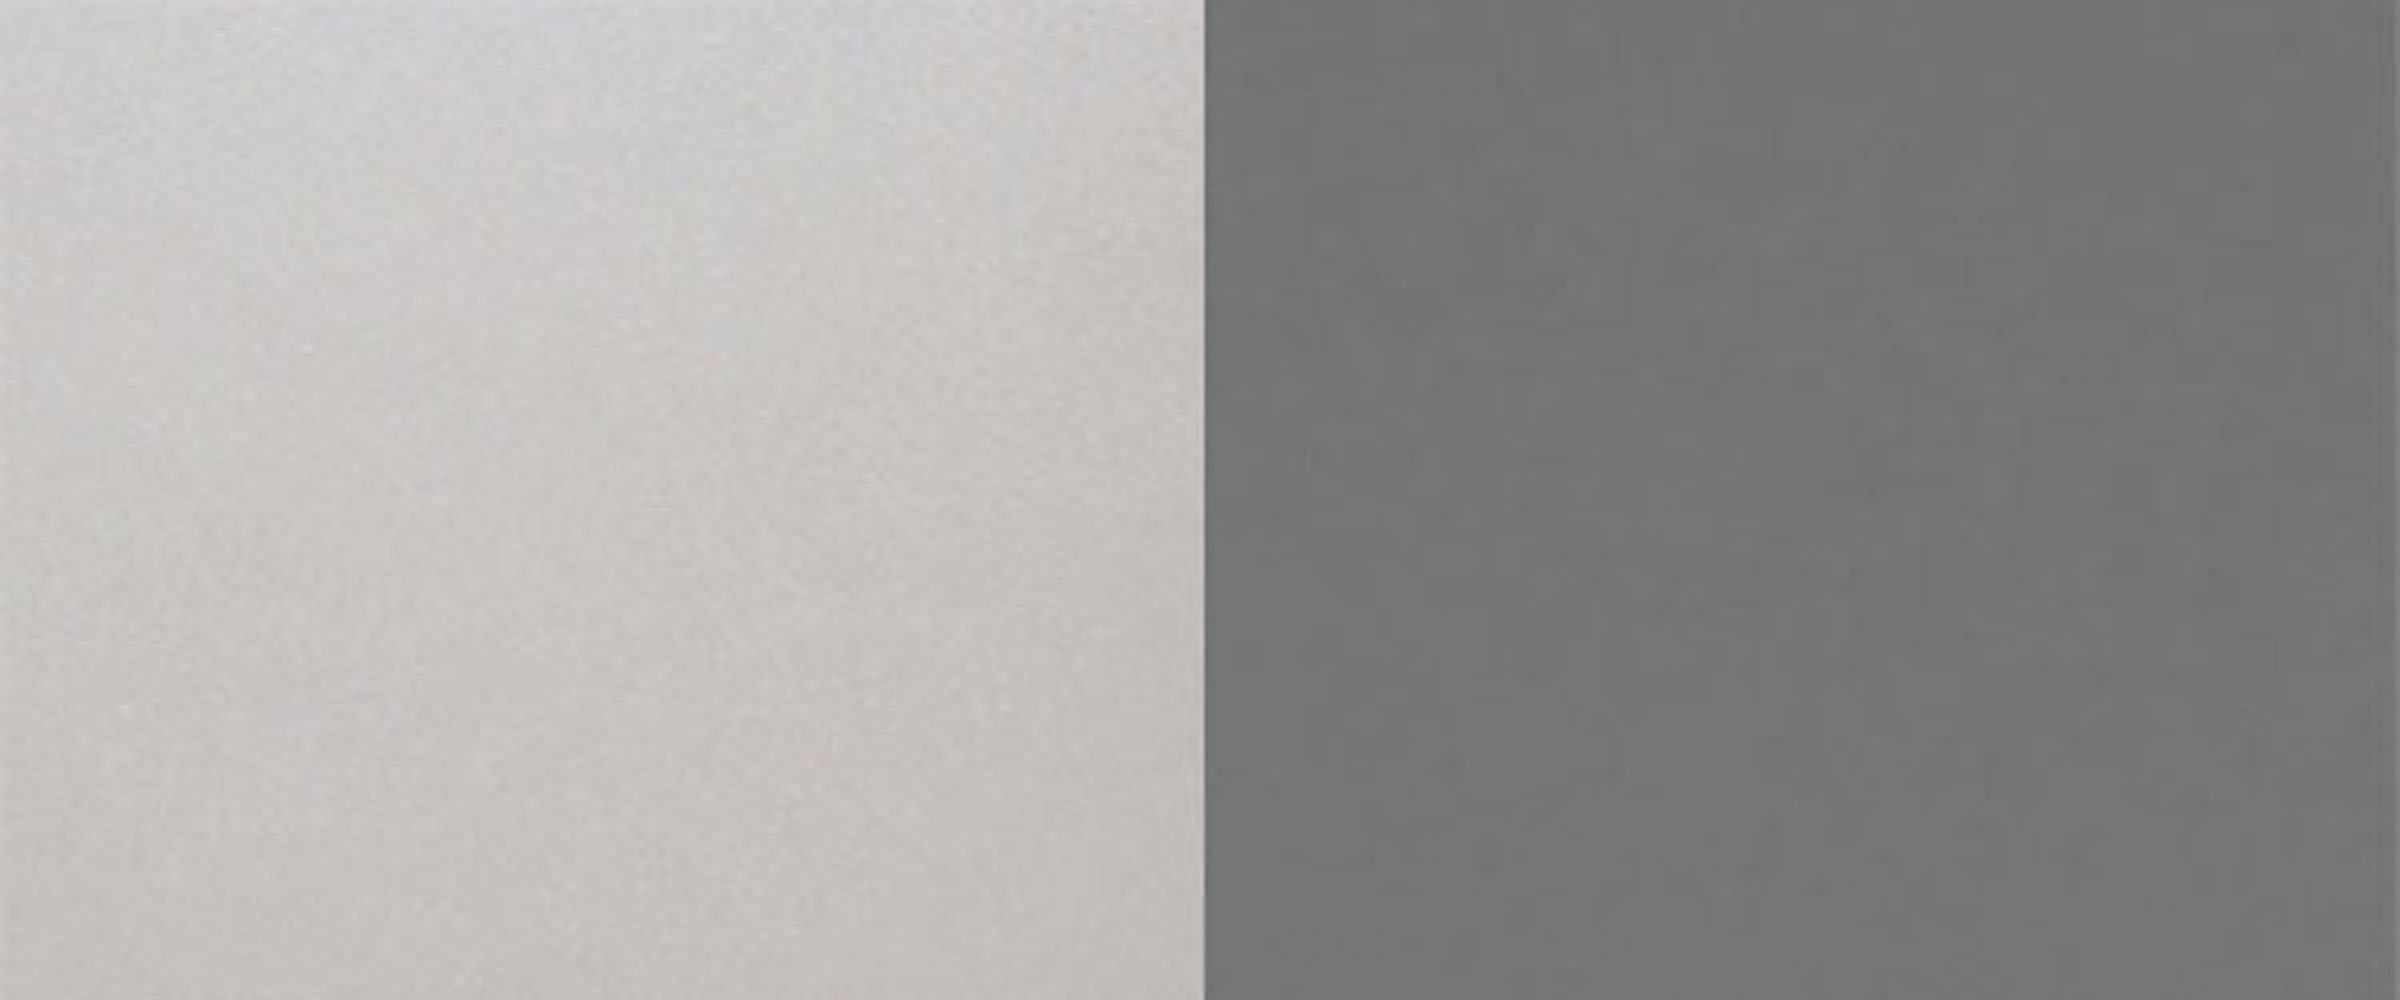 dust BO-W4B/90-AV Küchenschrank Farbe mit grau matt wählbar grey Bonn Klapphängeschrank 90cm / Klappe Feldmann-Wohnen